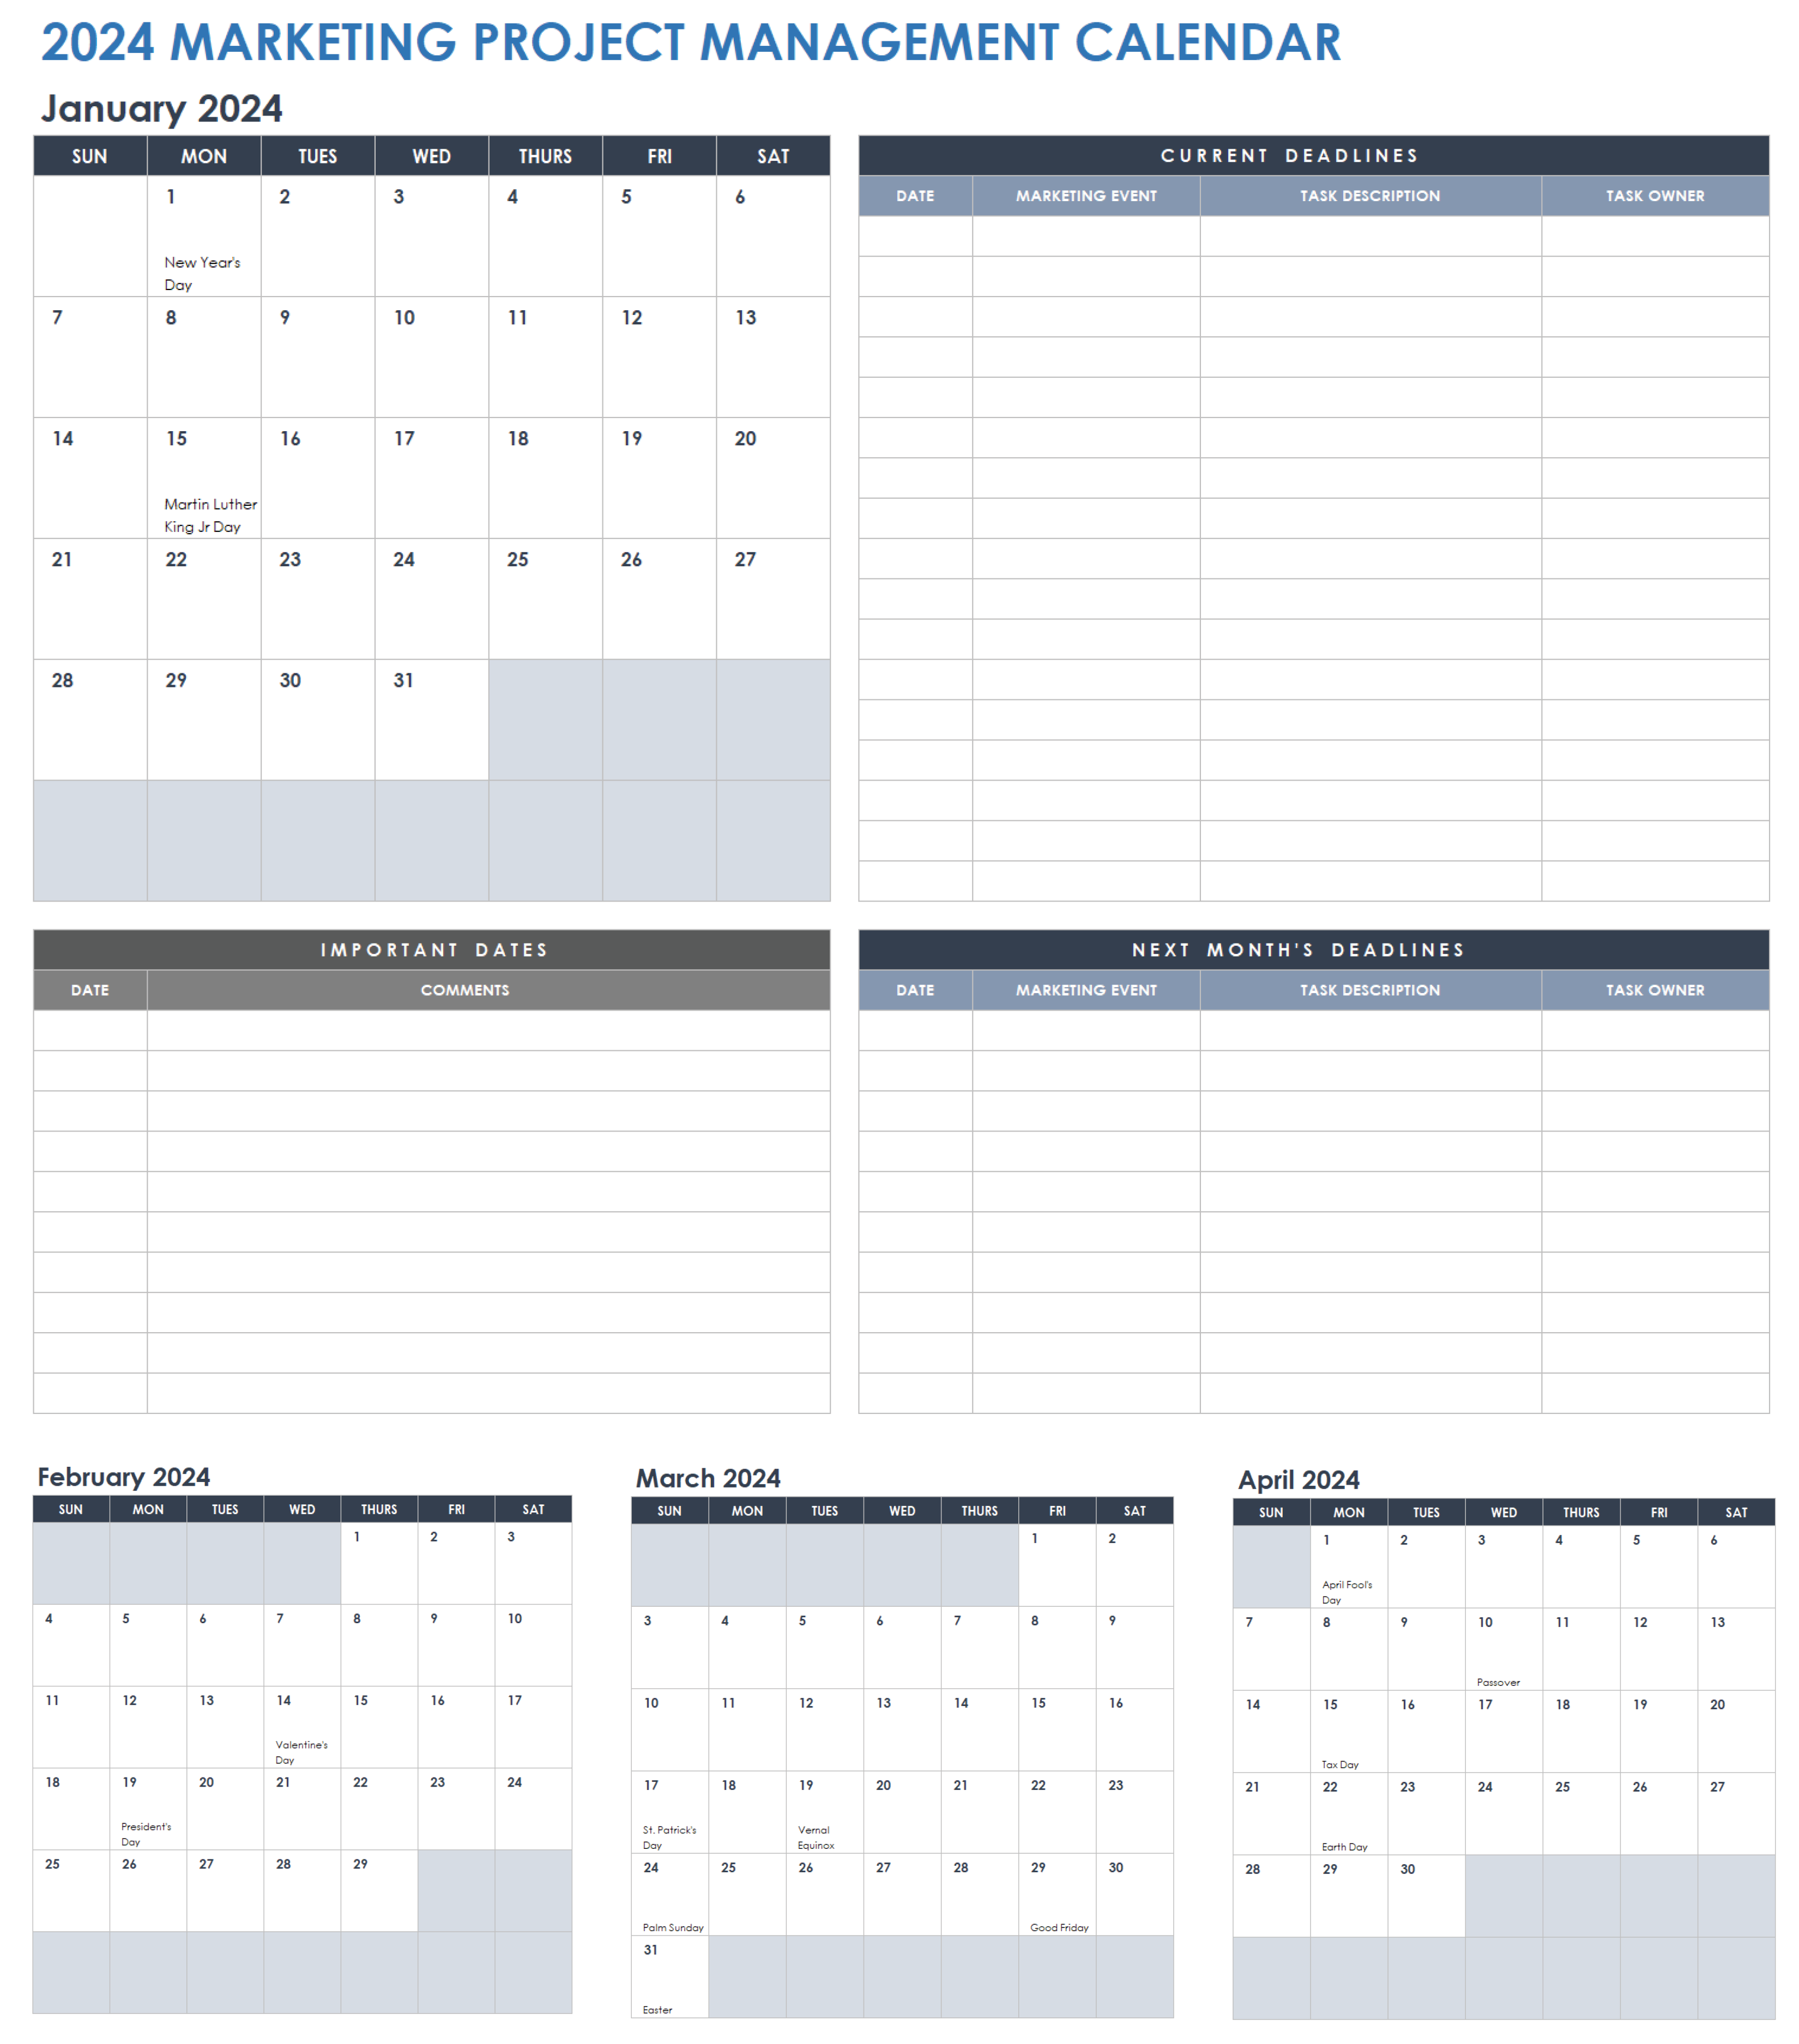 2024 Marketing Project Management Calendar Template